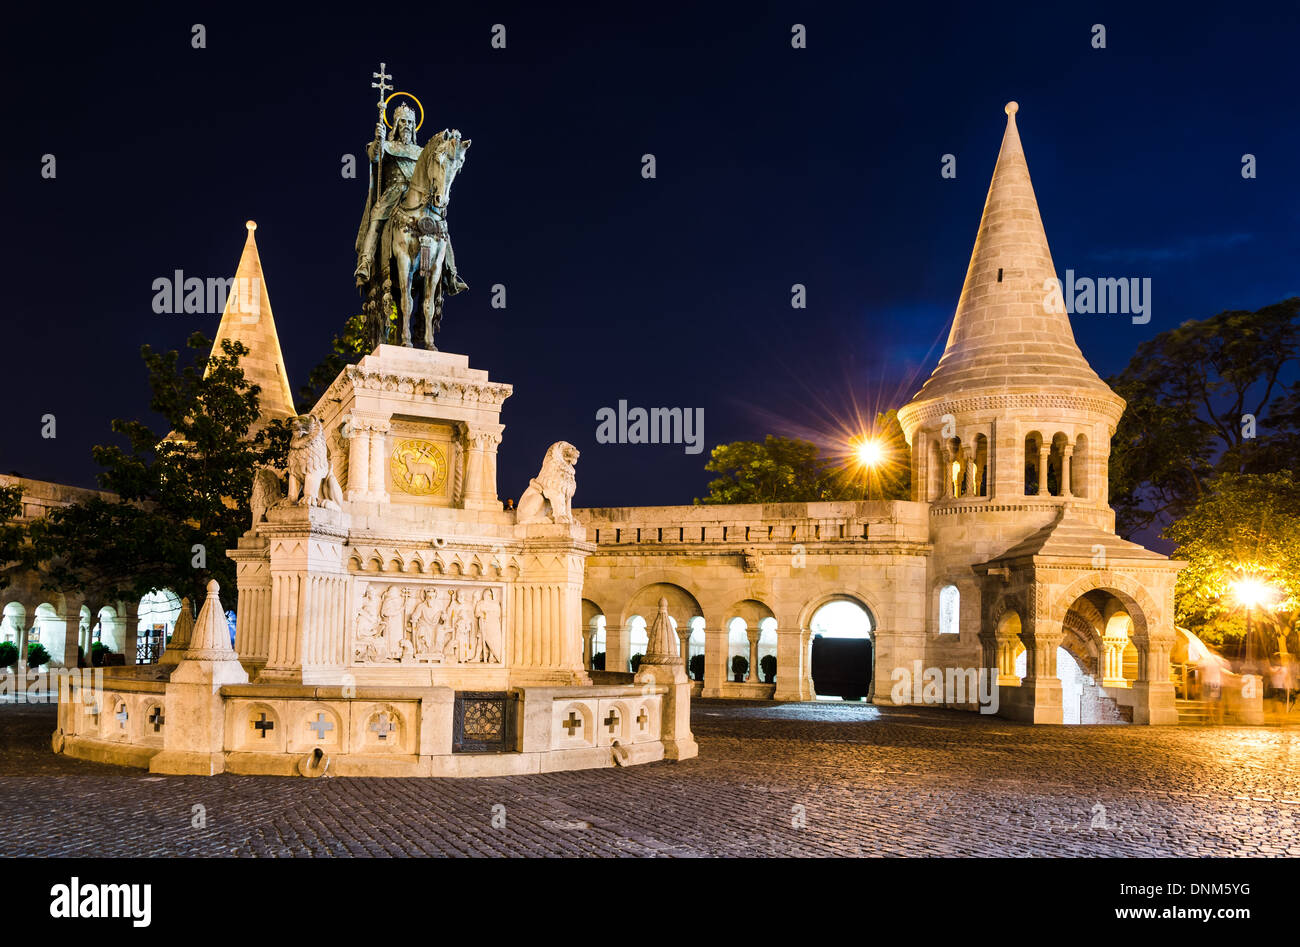 Statua equestre e Monumento di Santo Stefano, eretta nel 1906 dall'architetto Frigyes Schulek a Budapest, Ungheria Foto Stock